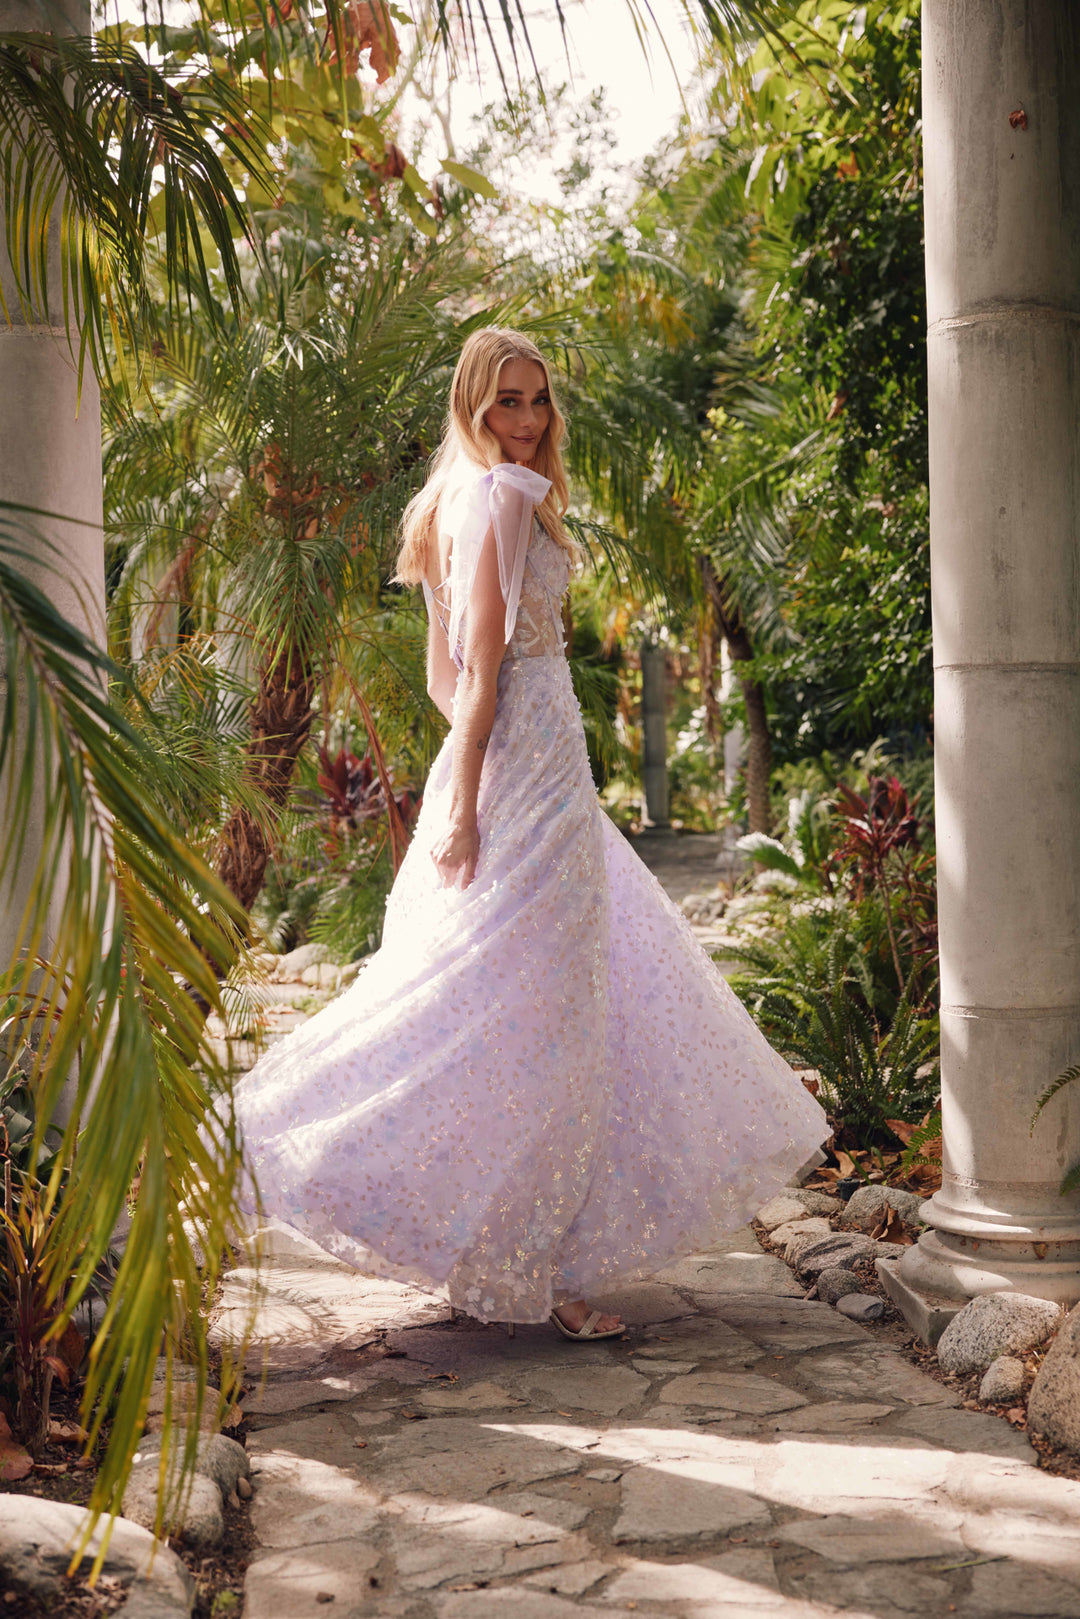 3D Floral Glitter Print Sleeveless A-line Gown by Juliet JT2439K